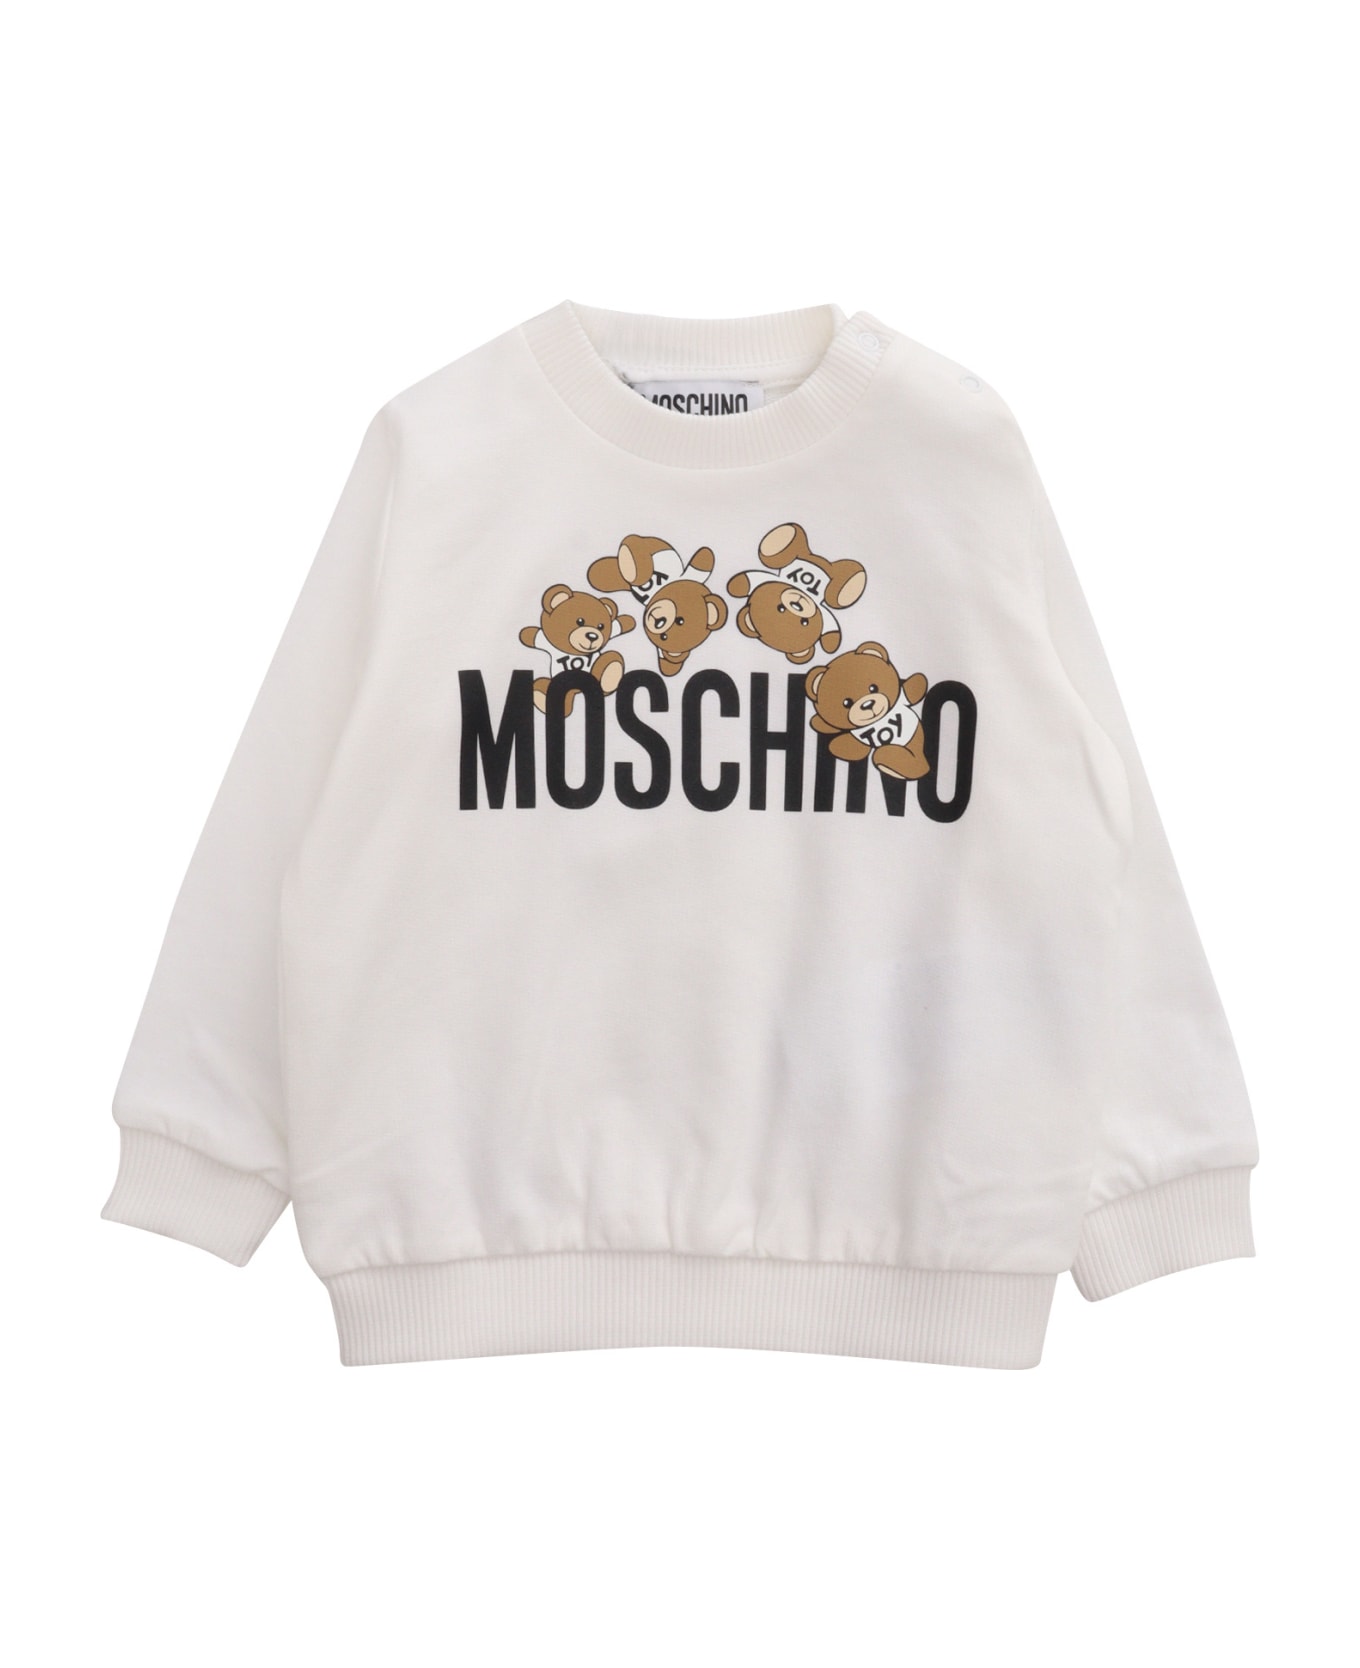 Moschino White Sweatshirt With Print - WHITE